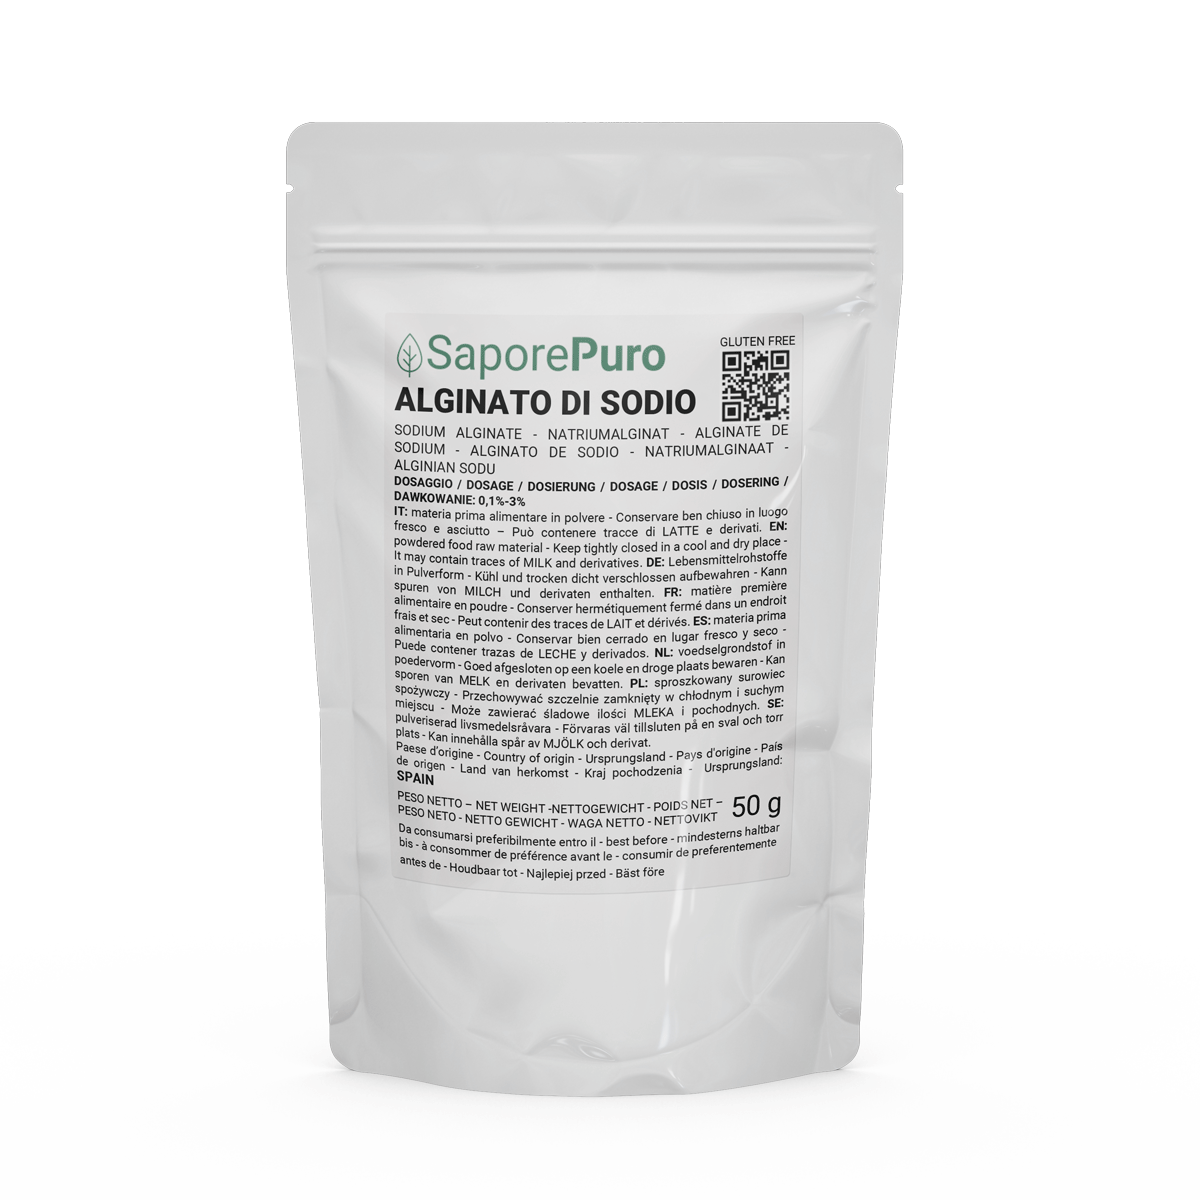 Alginate de sodium E401